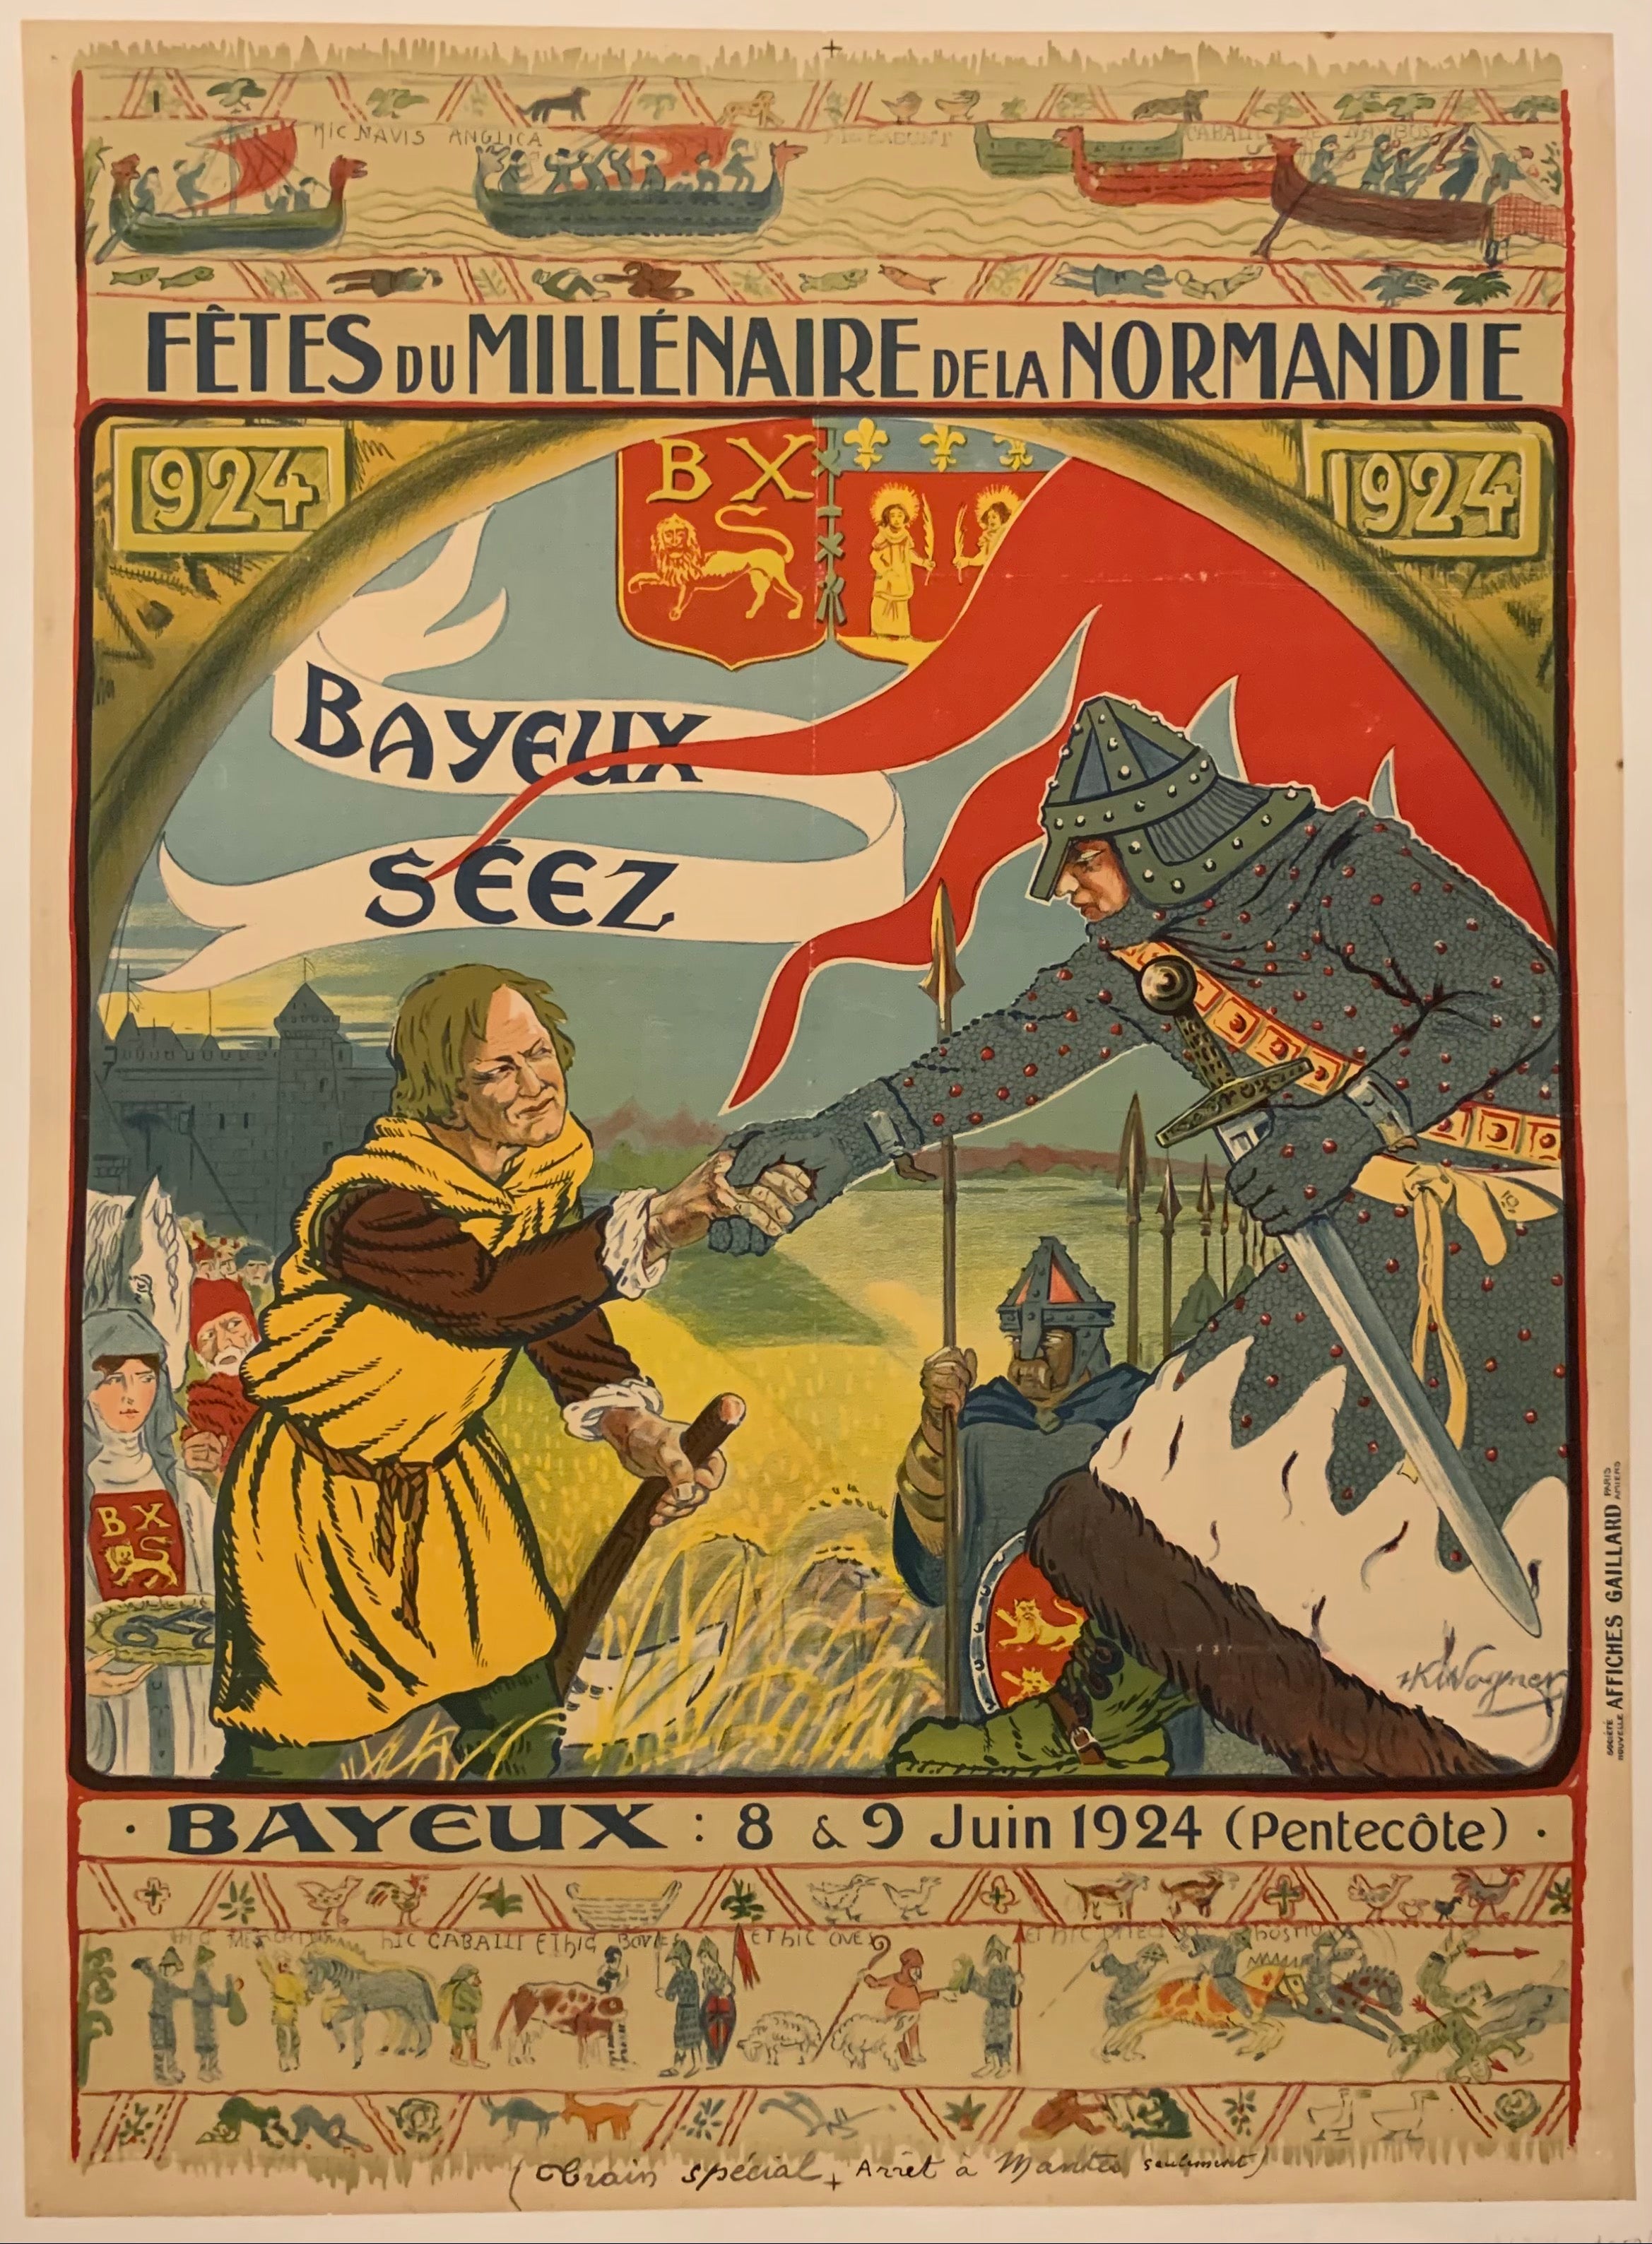 Fetes du Millenaire de la Normandie – Poster Museum